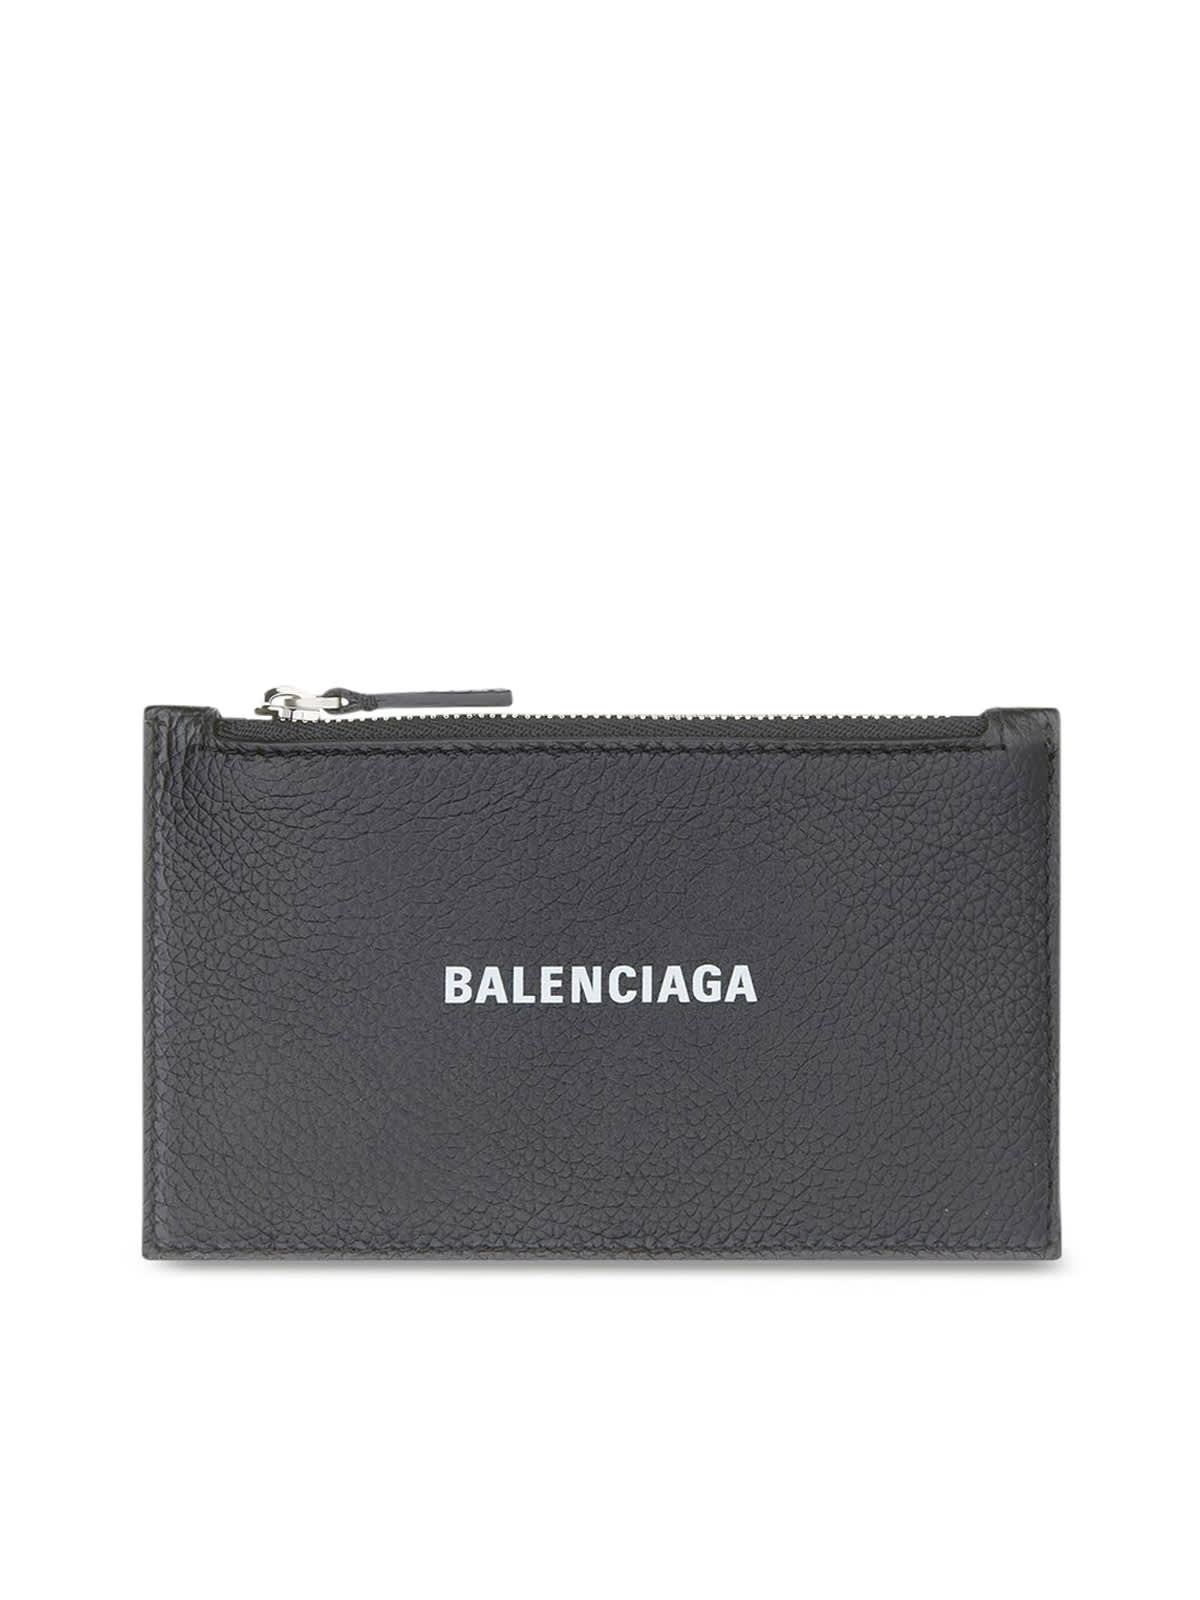 Balenciaga Cash L Co & Ca H Enl